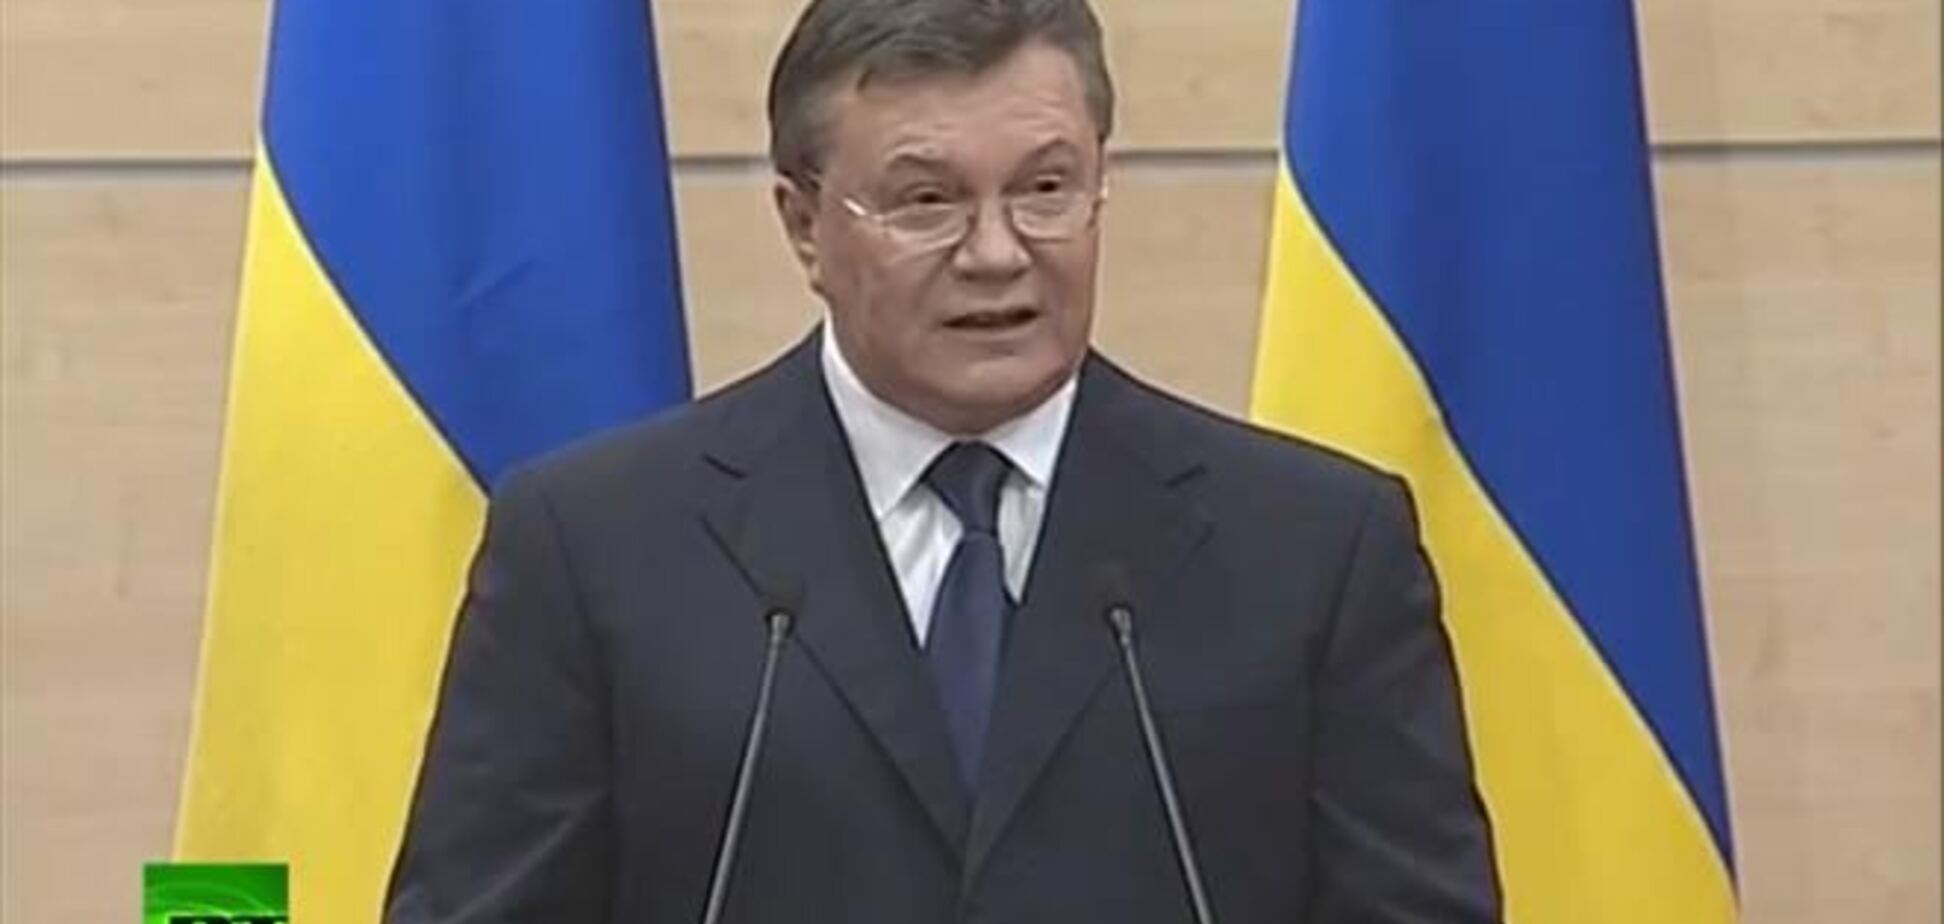 Експерт про заяву Януковича: якби Путін хотів оголосити війну, то діяв би інакше